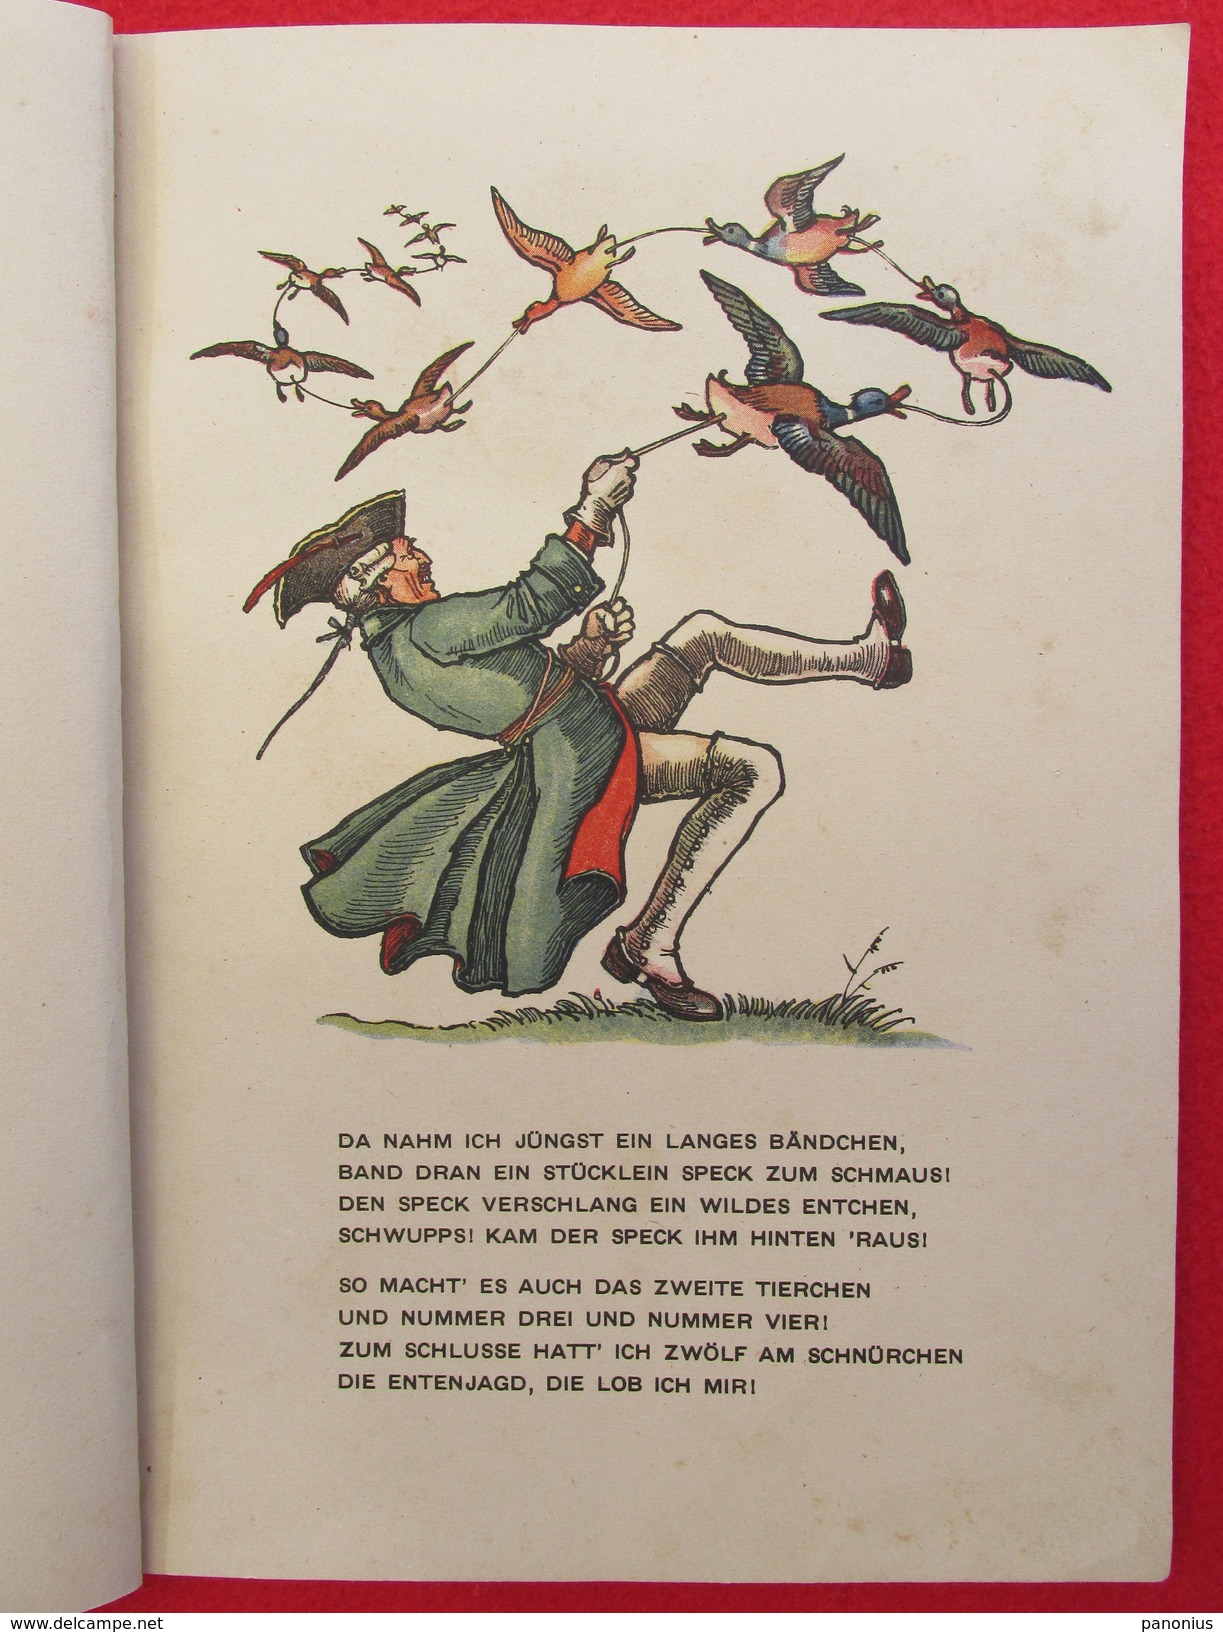 BARON VON MUNCHHAUSEN - Picture Book / Bilderbuch, Edition: Trenkler, Leipzig, Germany, Cca 1930. - Livres D'images